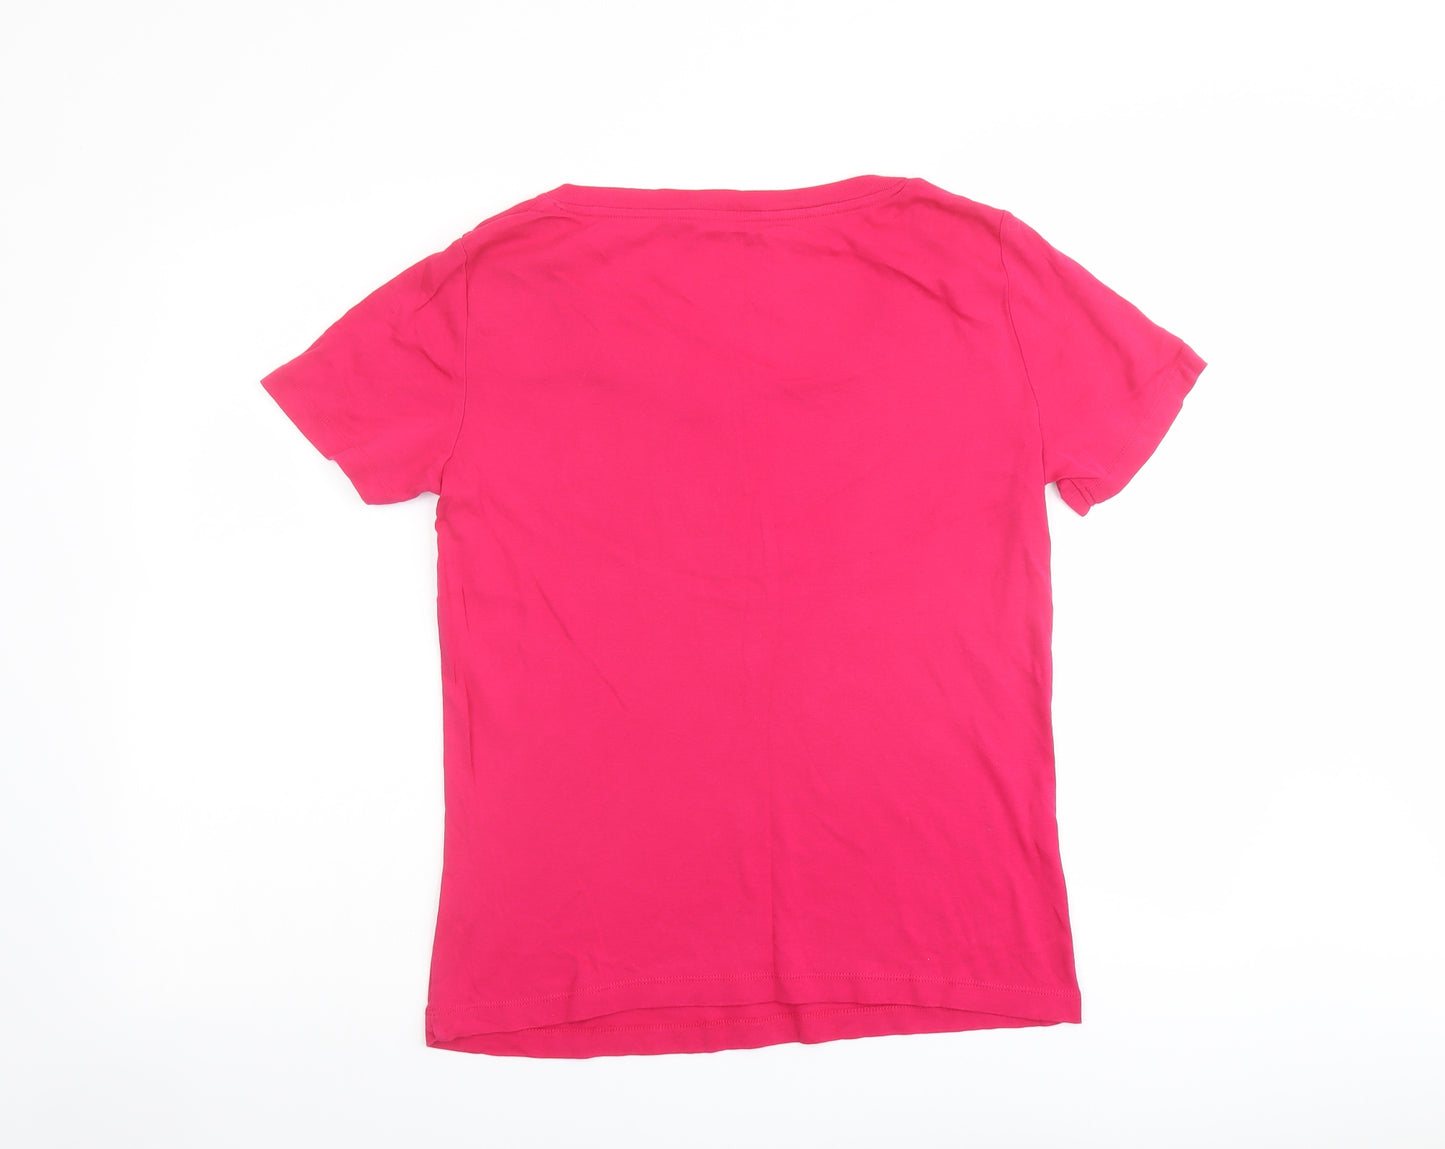 Bonmarché Womens Pink Cotton Basic T-Shirt Size M Square Neck